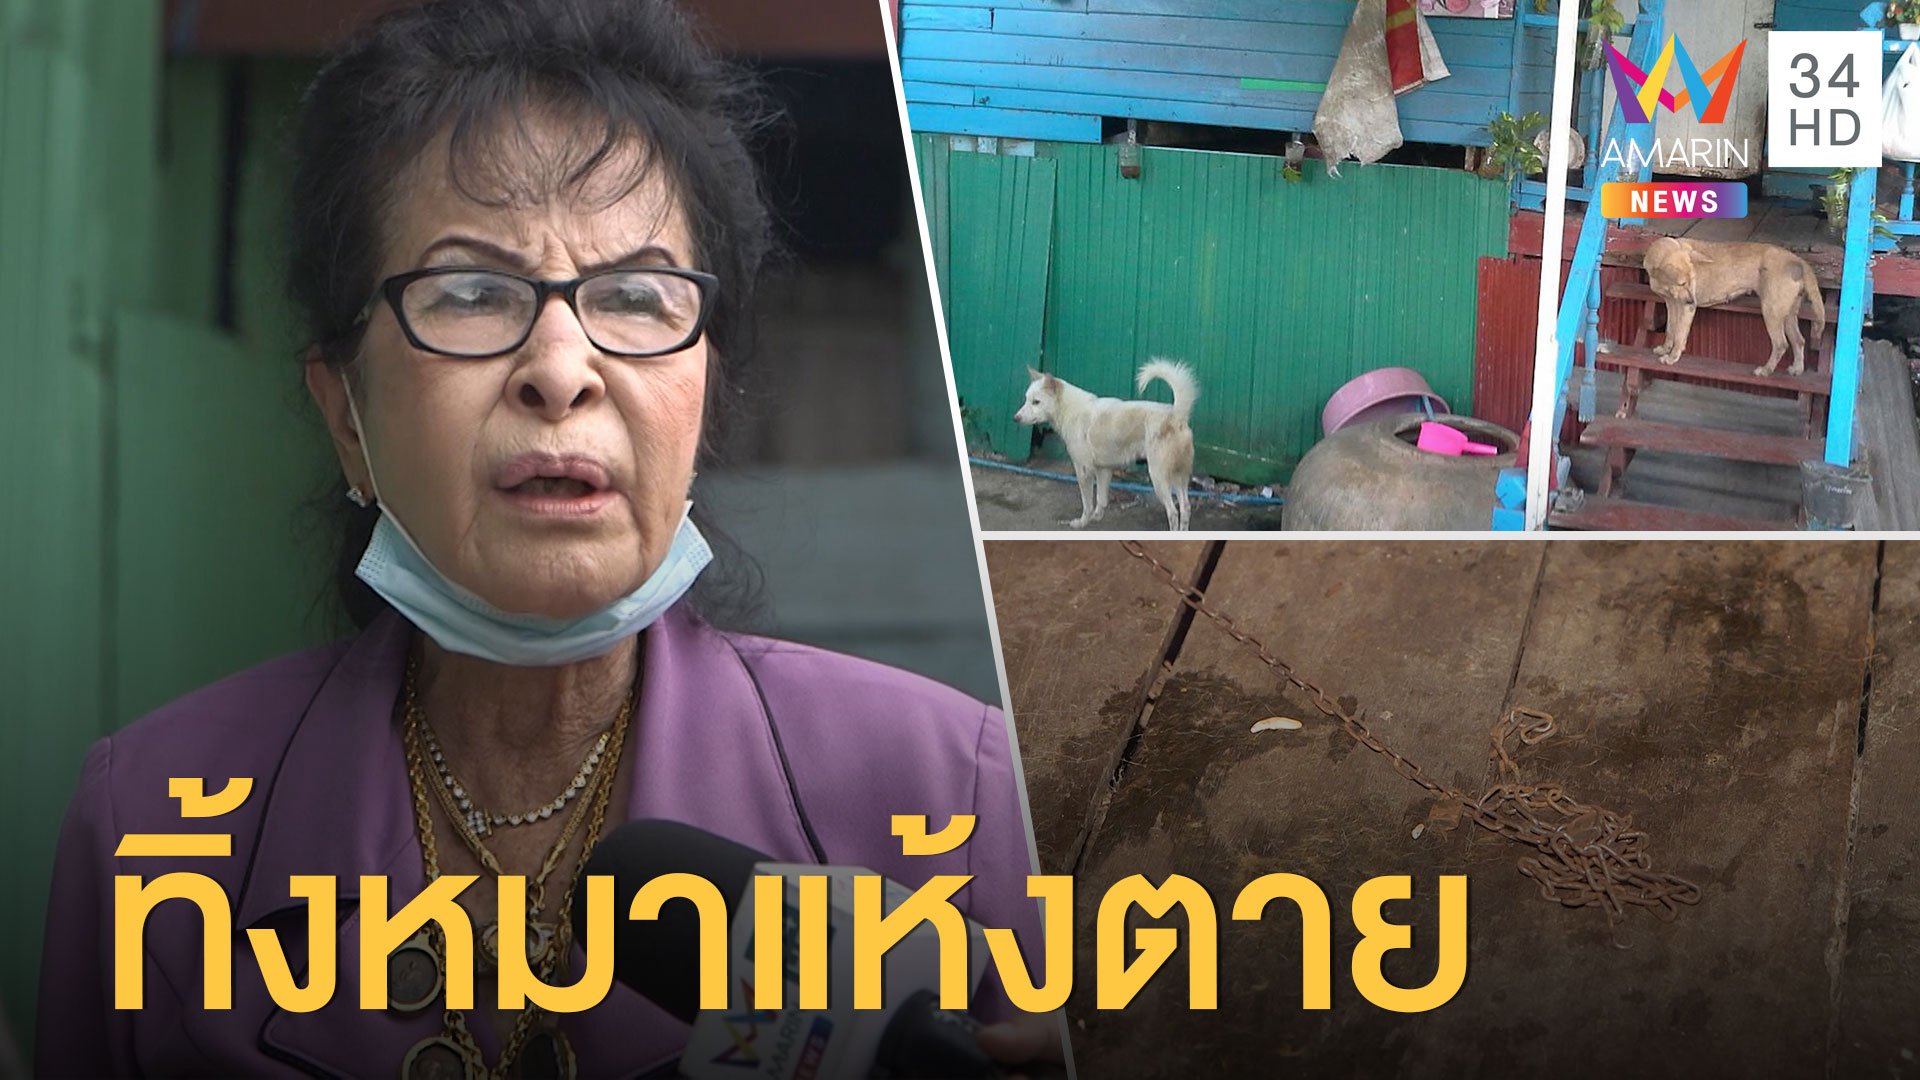  สาวค้างค่าเช่าห้อง ทิ้งหมาแห้งตายคาบ้าน | ข่าวเที่ยงอมรินทร์ | 11 ก.ย. 63 | AMARIN TVHD34